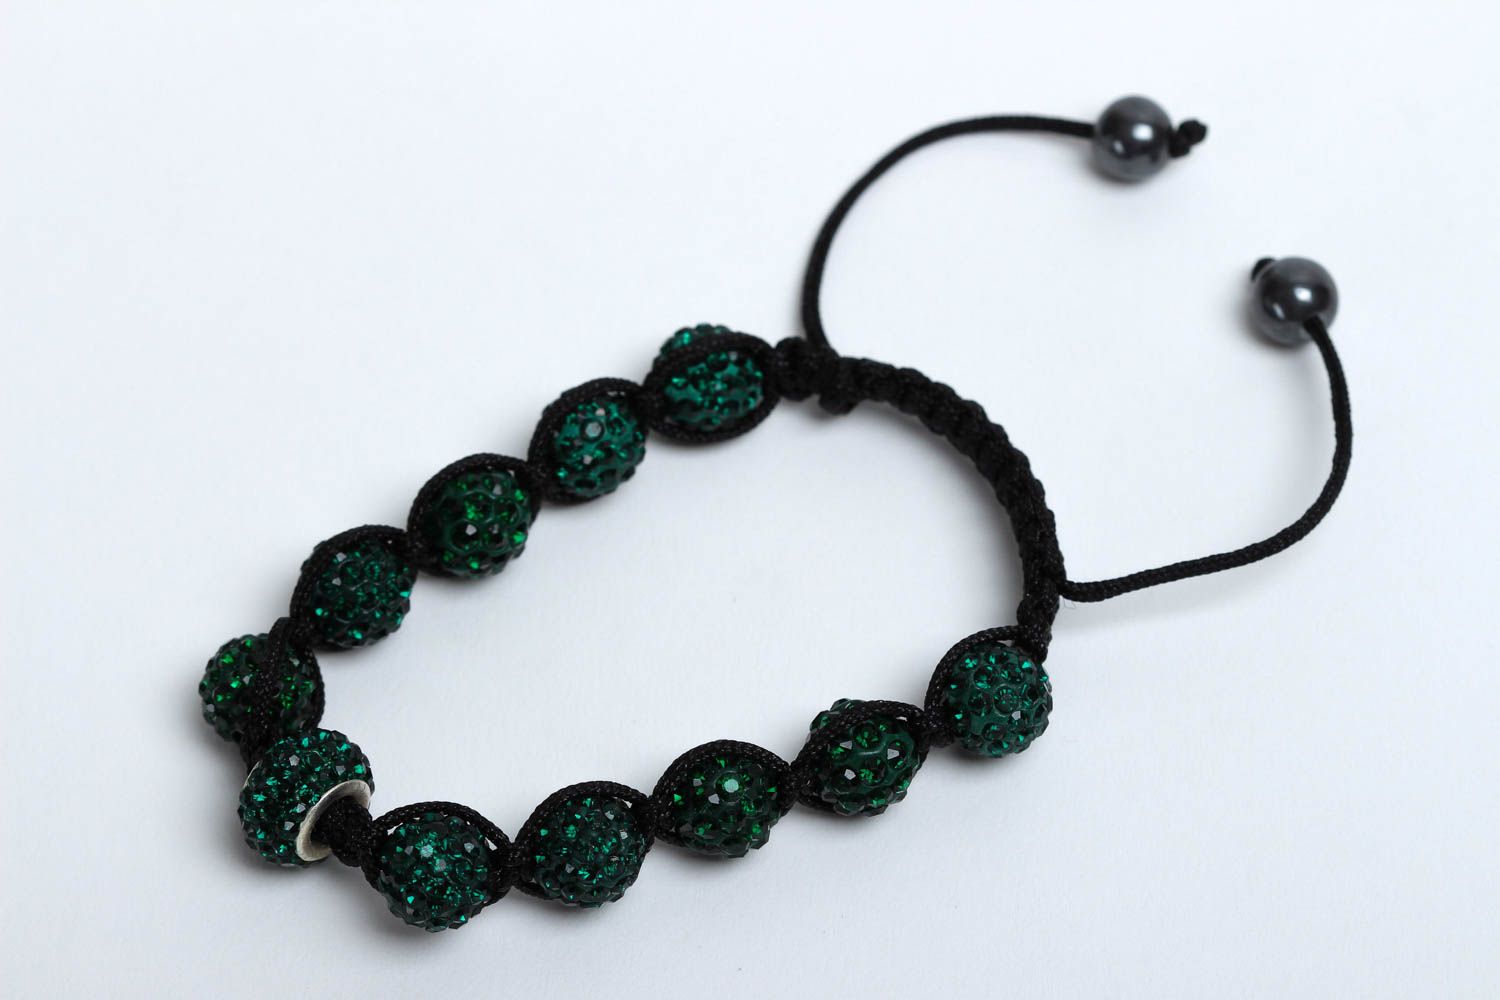  Женский браслет из бусин браслет ручной работы зеленый яркий браслет на руку фото 2